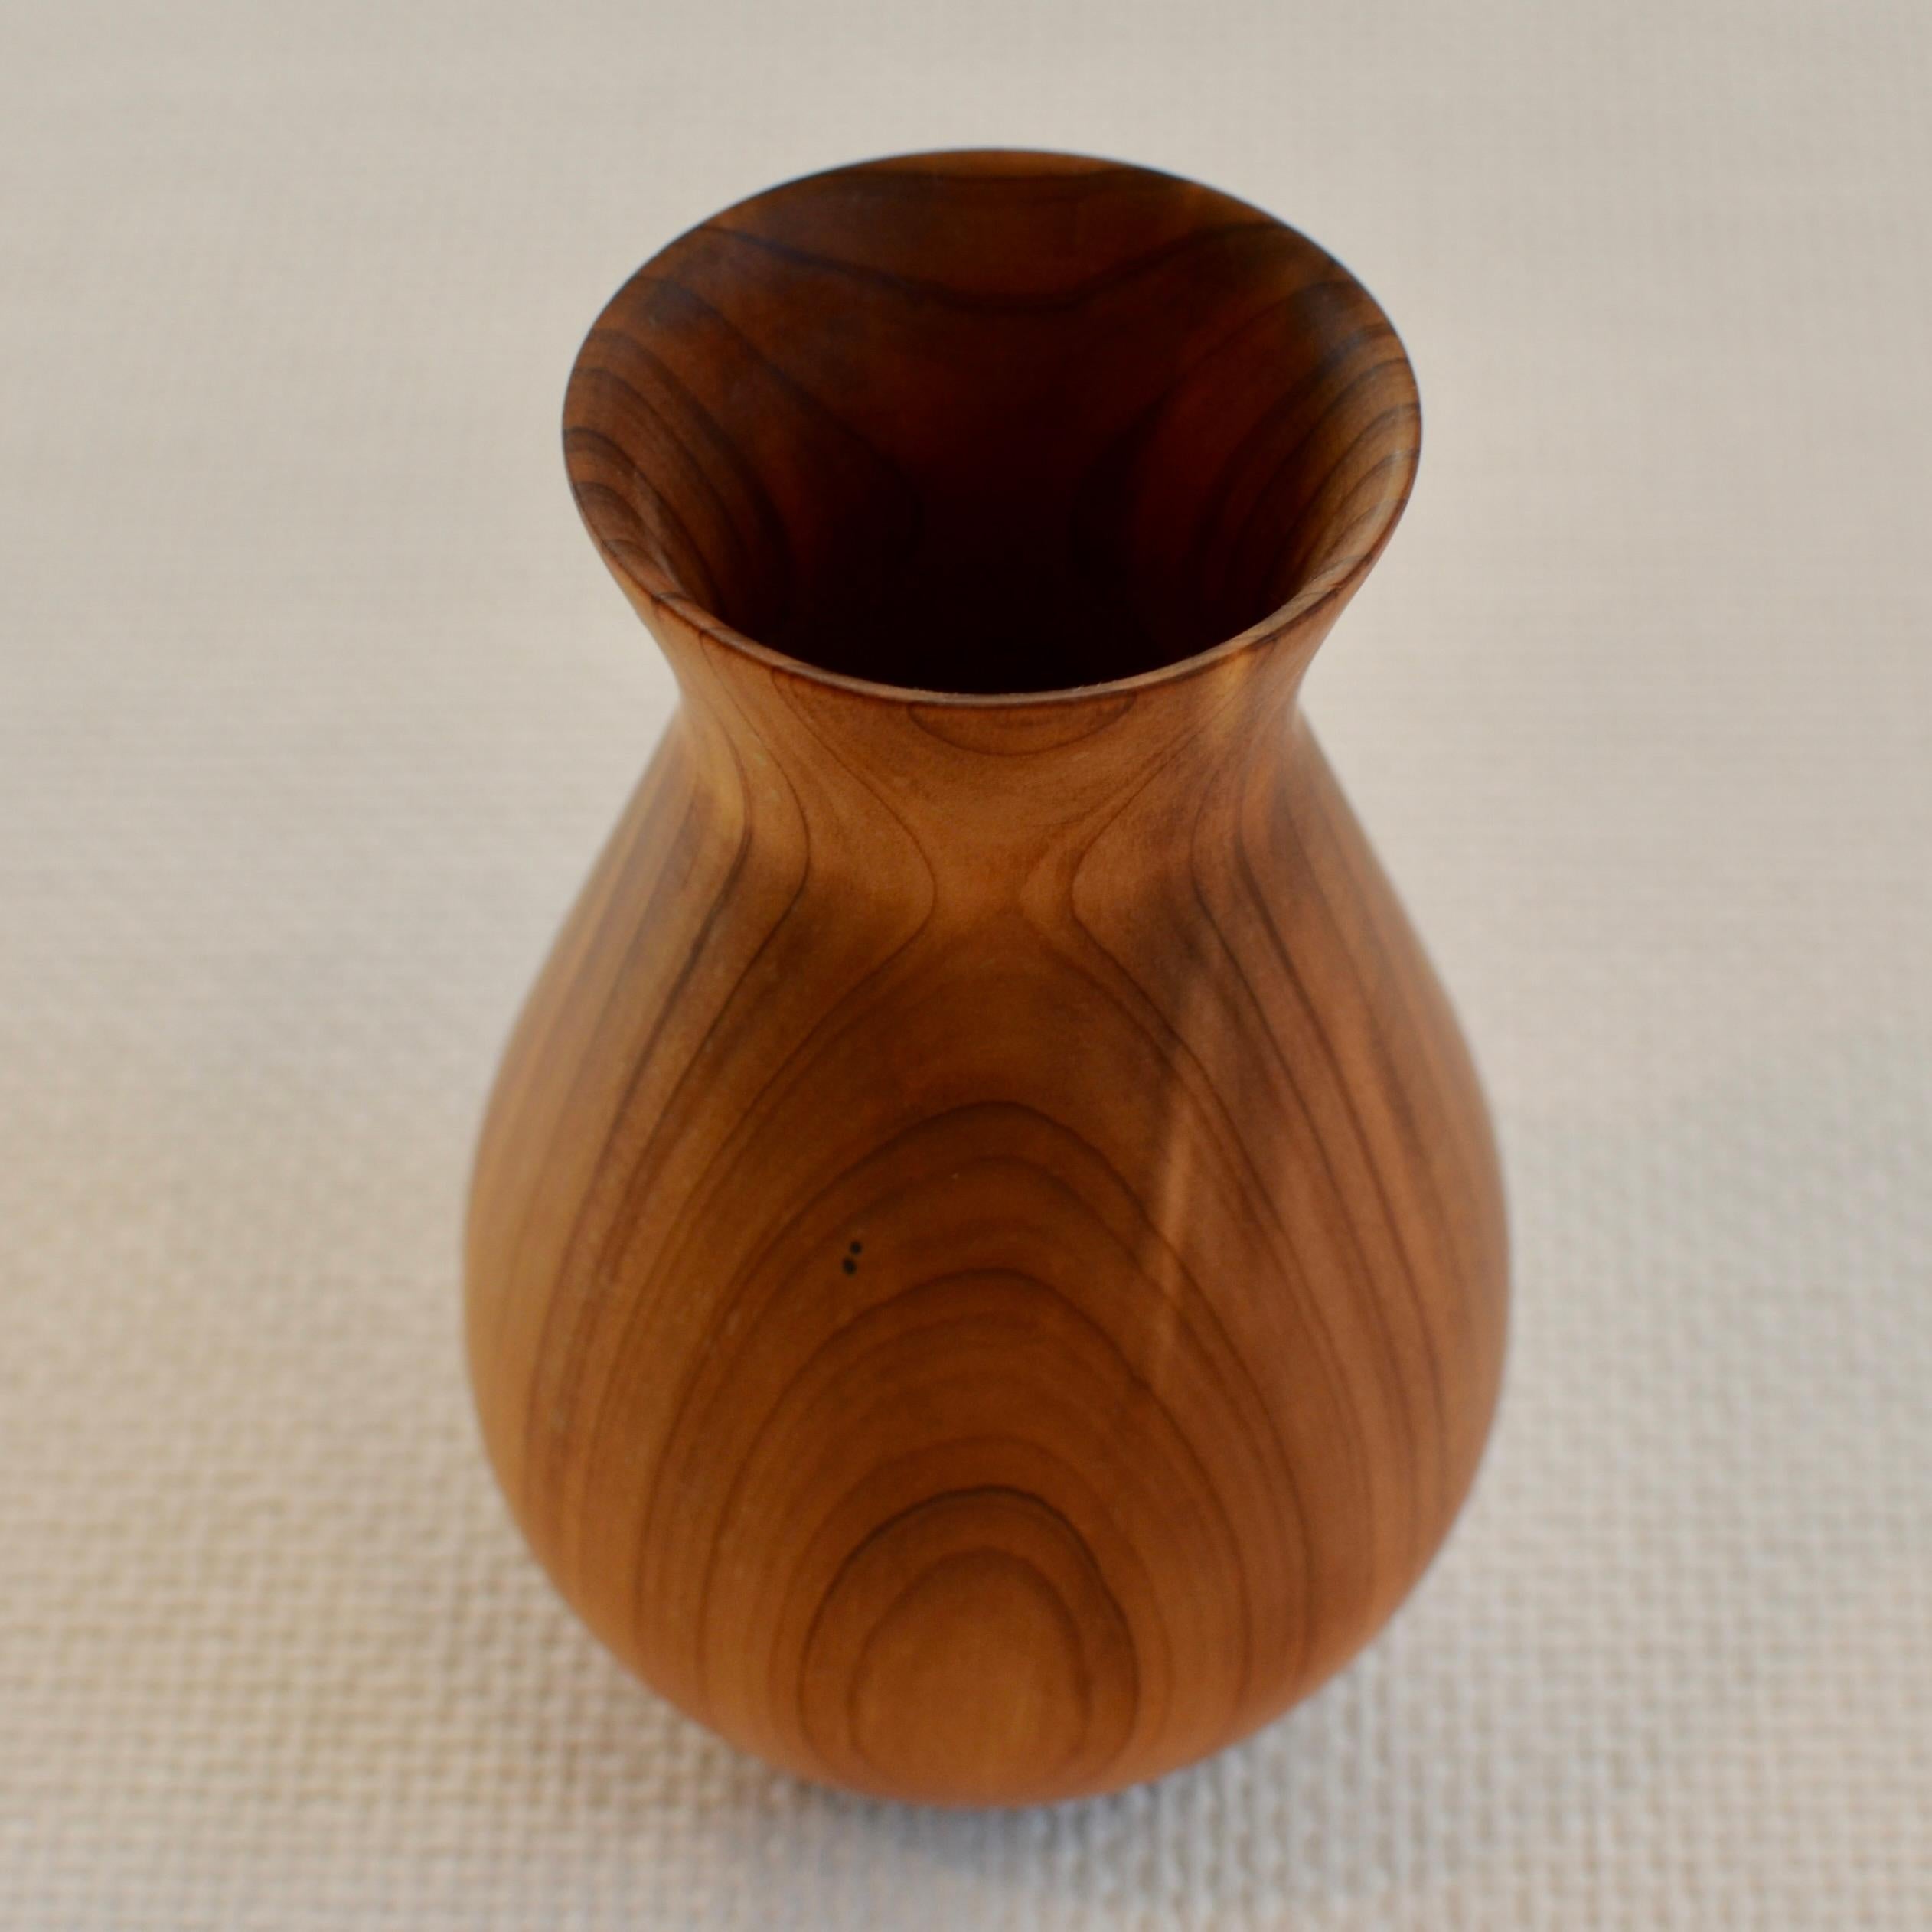 Vase en chêne sculpté à la main. Créé en utilisant uniquement du bois provenant de chênes abattus. Exemplaire unique.